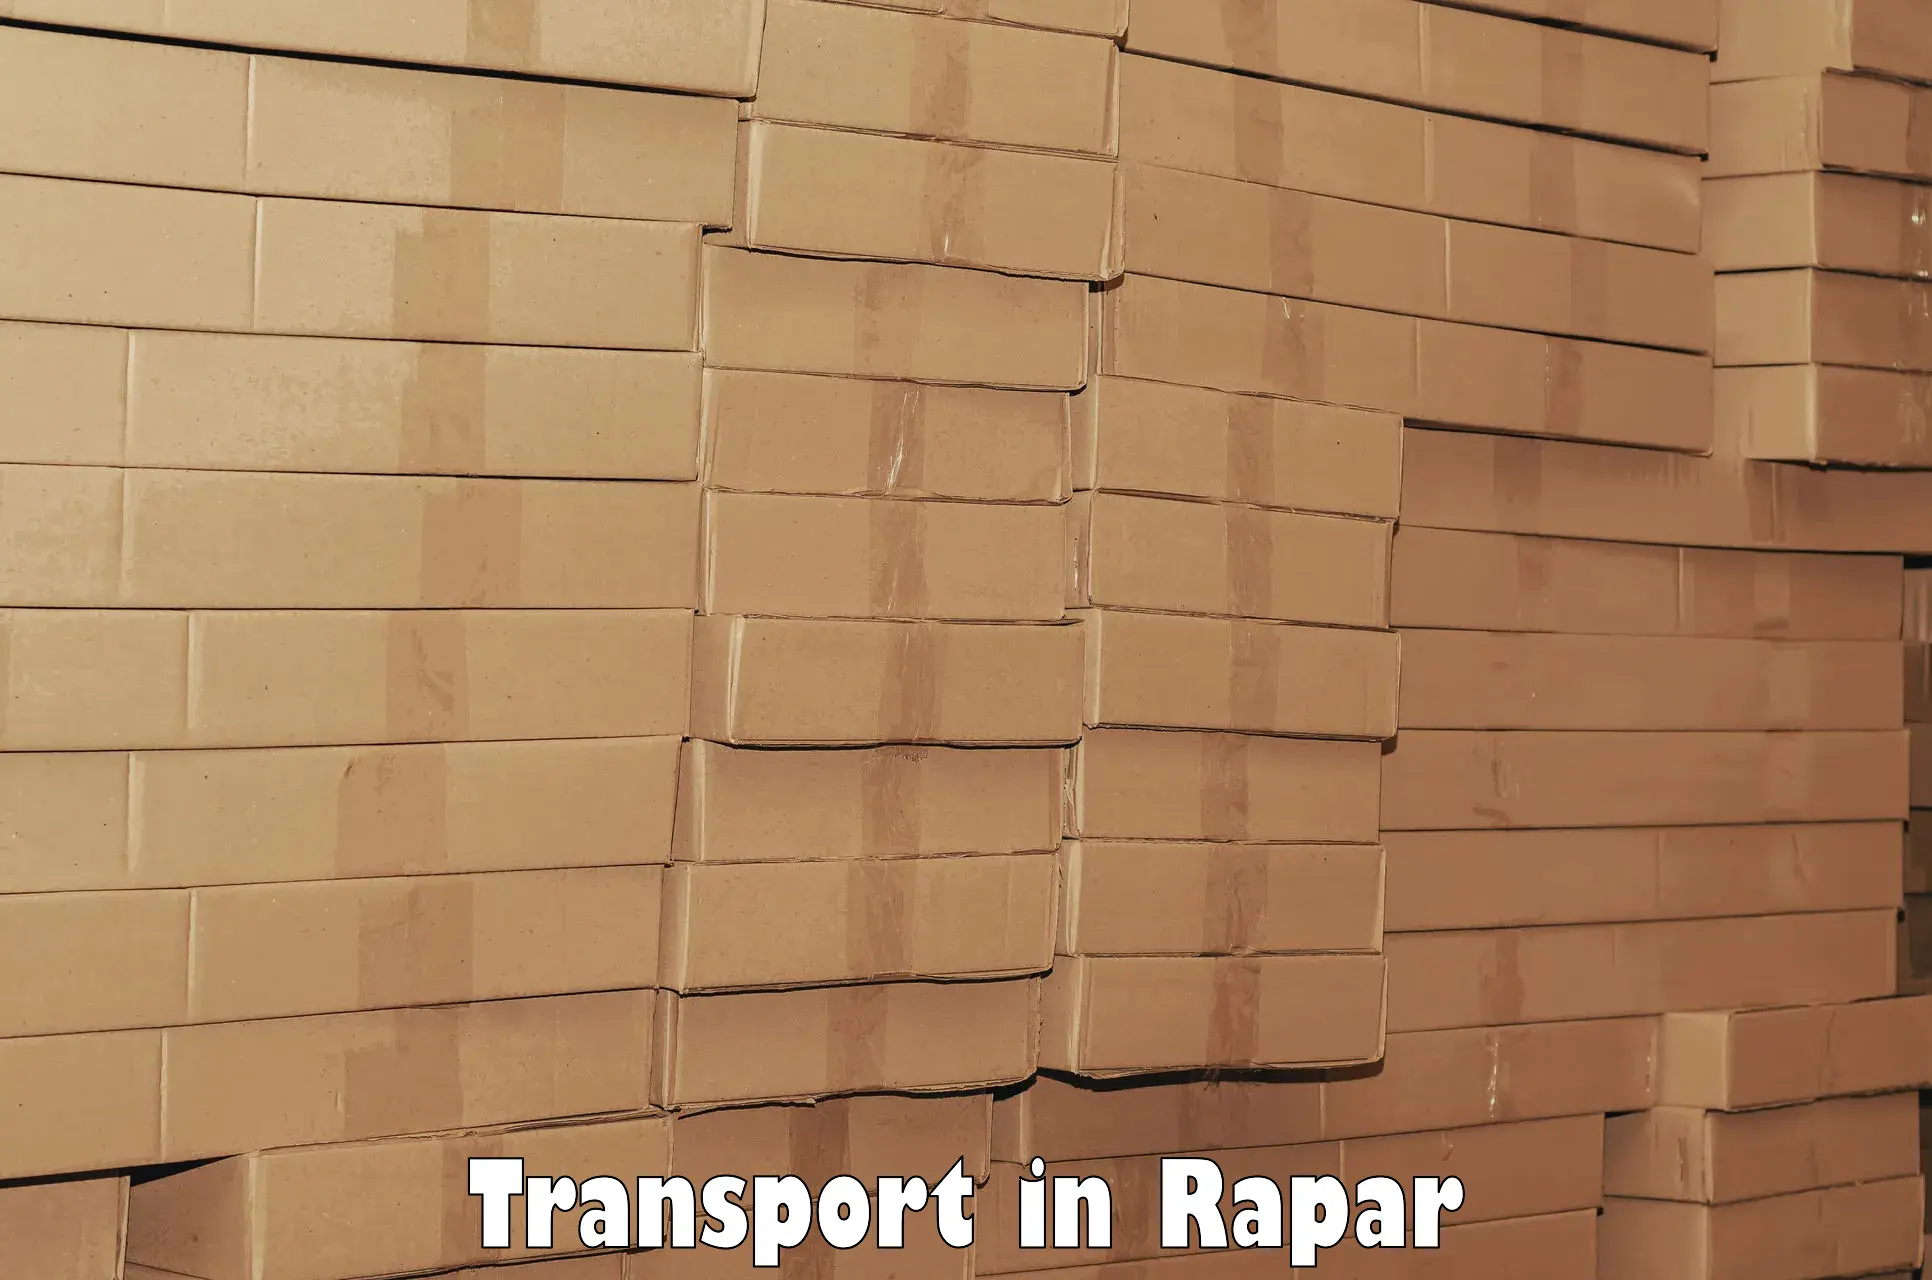 Transport services in Rapar